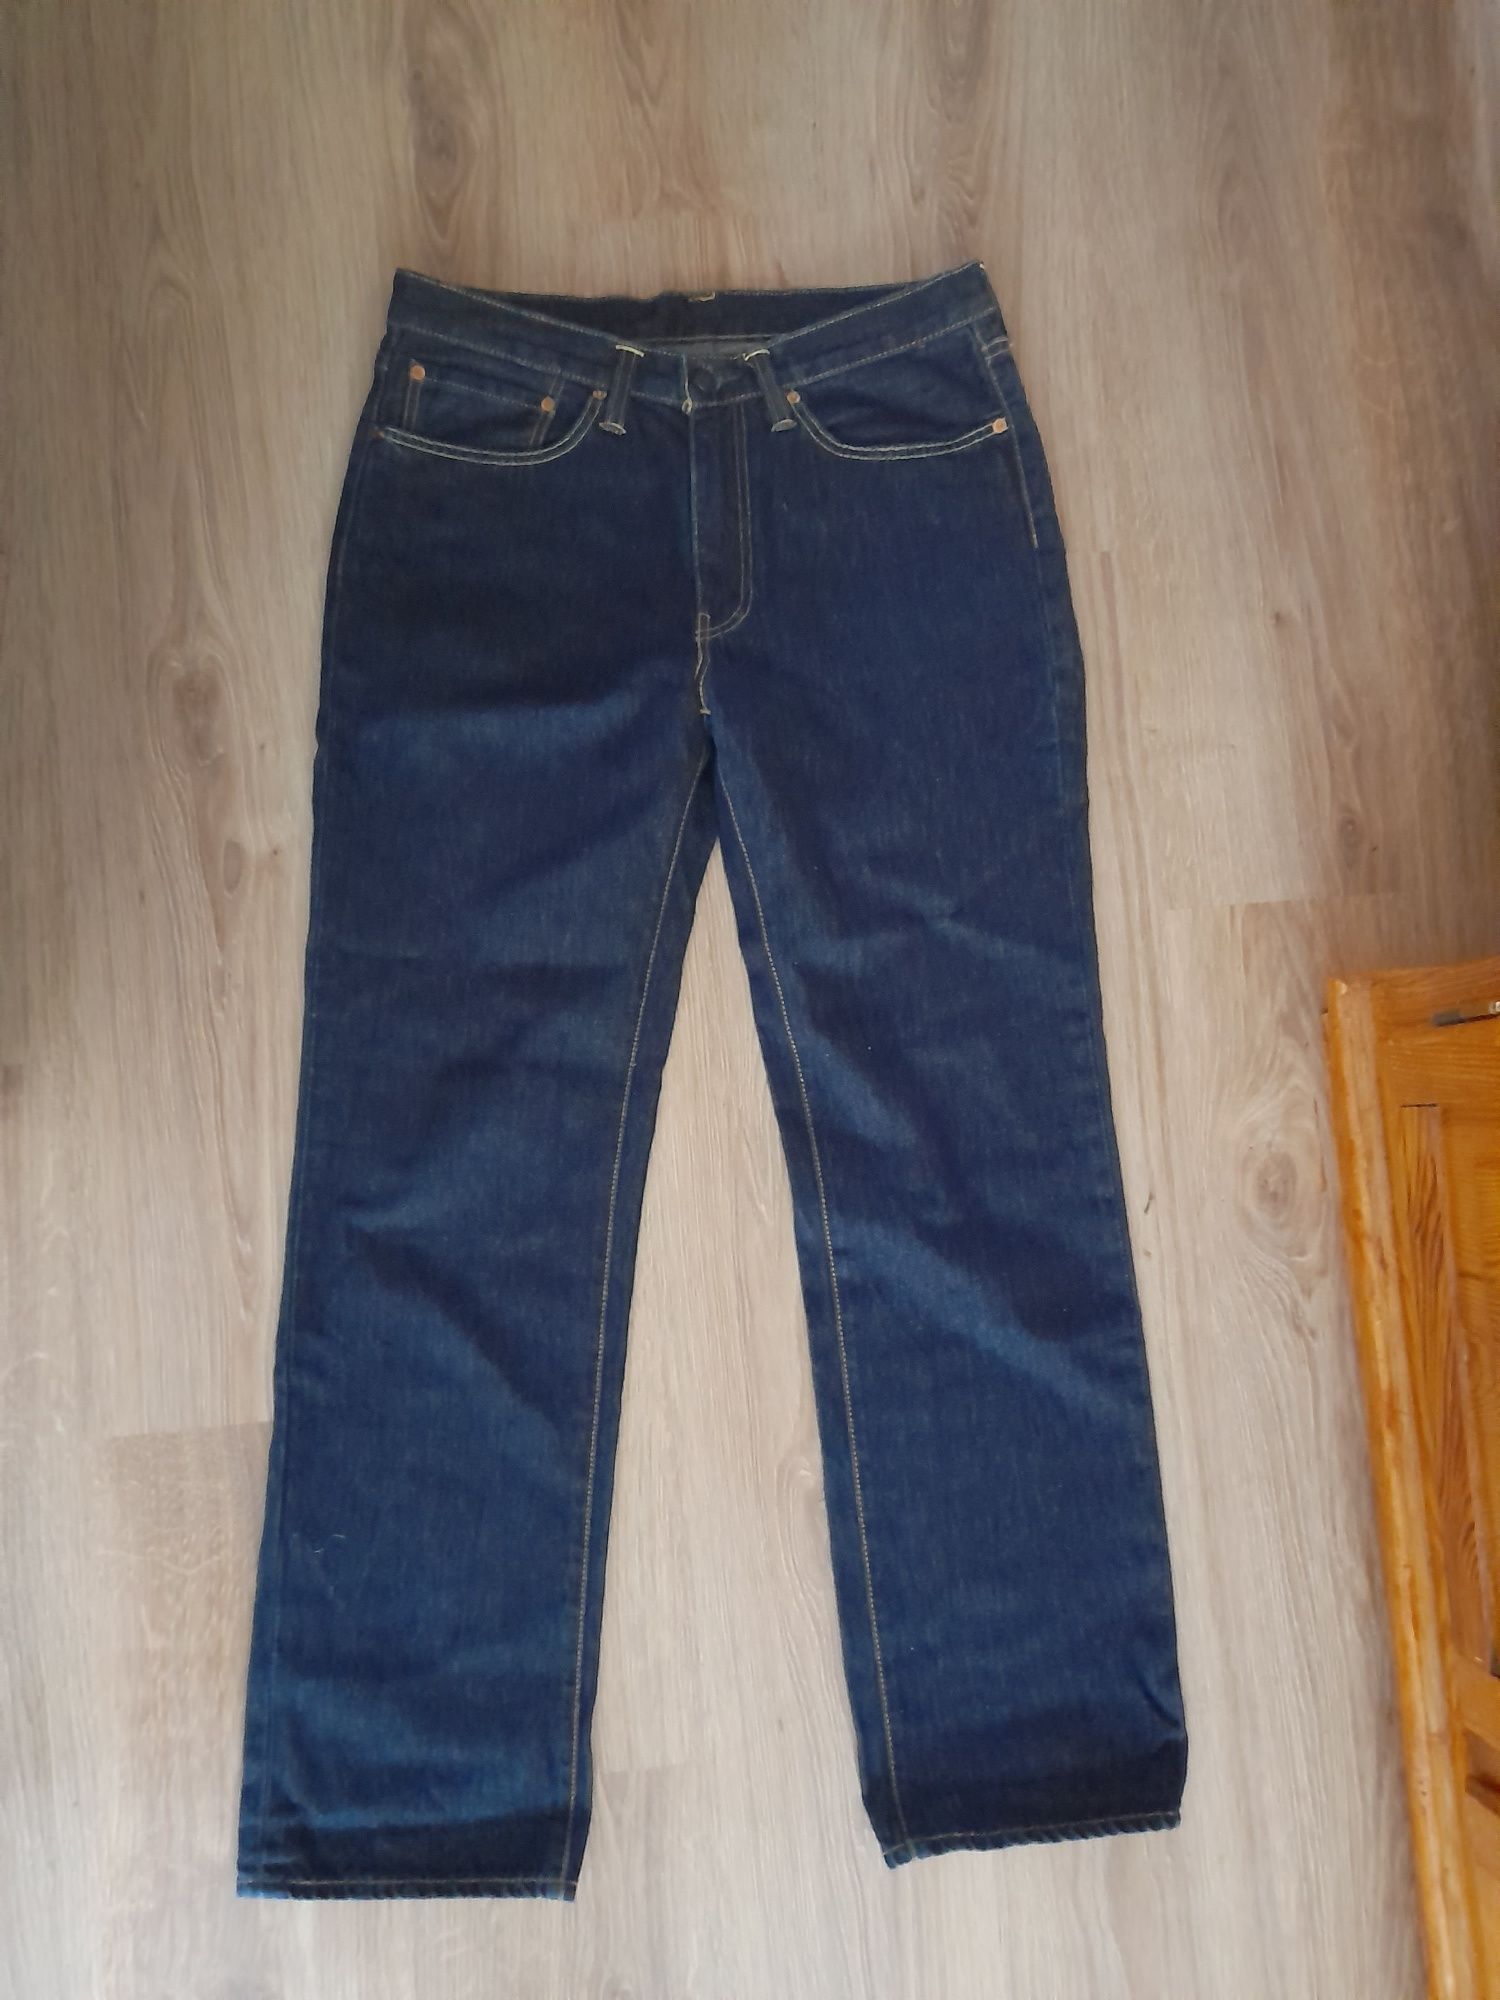 Levi Strauss 514 spodnie jeans W34 L32